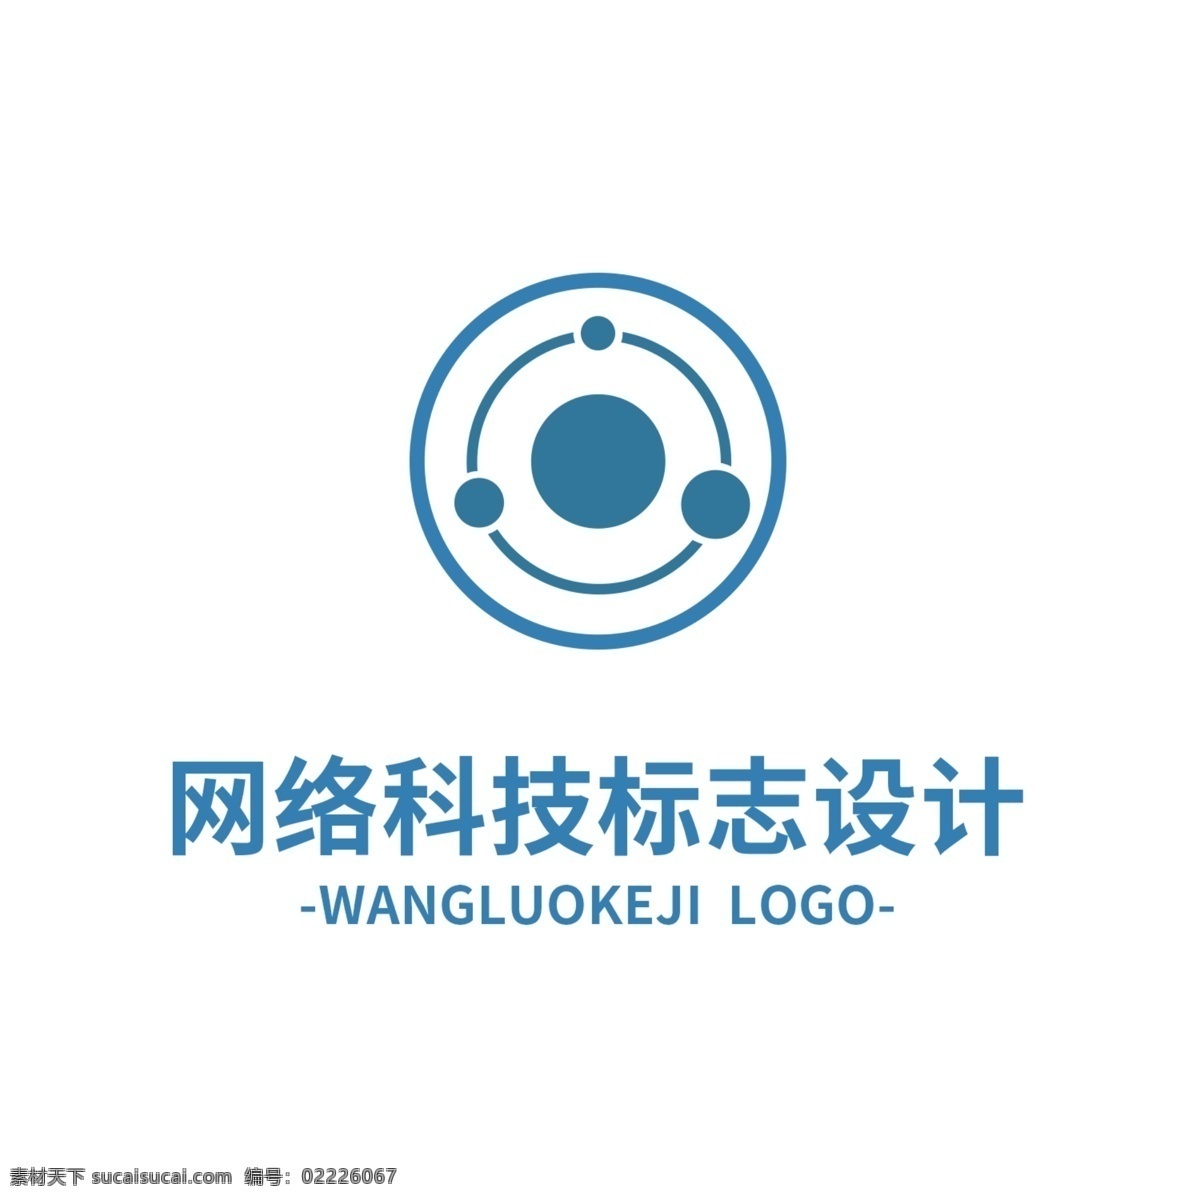 网络 科技 标志设计 loho 标识 行业标志 简约 蓝色